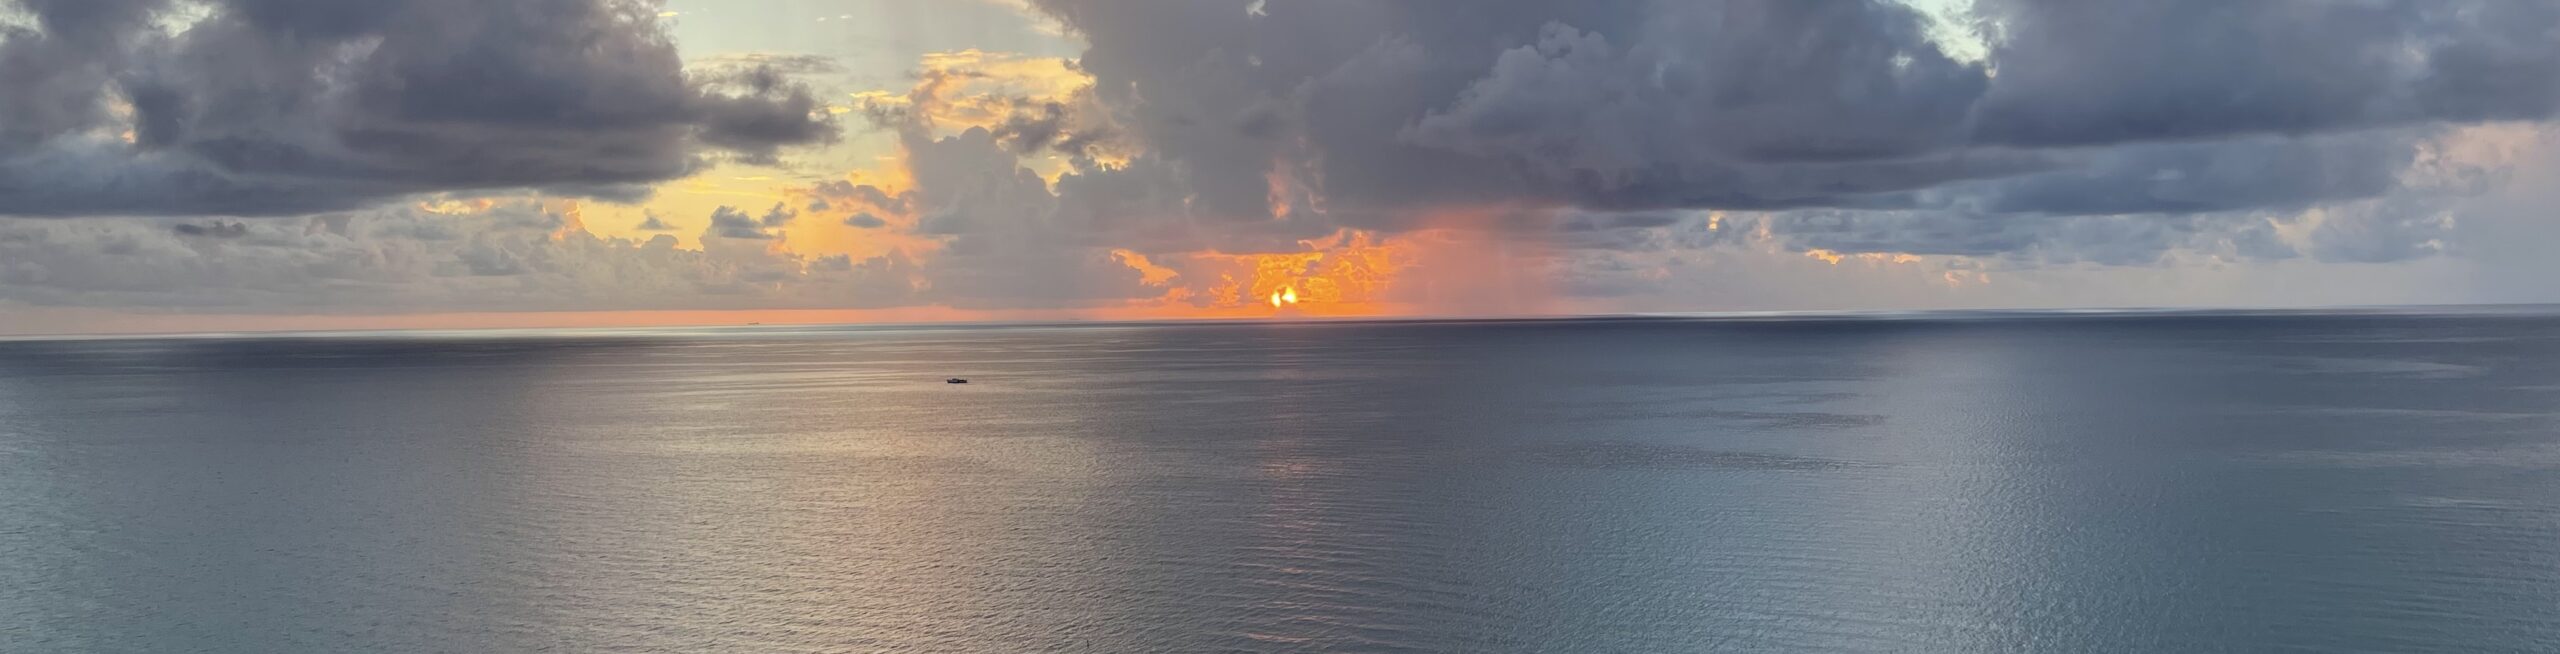 Miami Sunrise